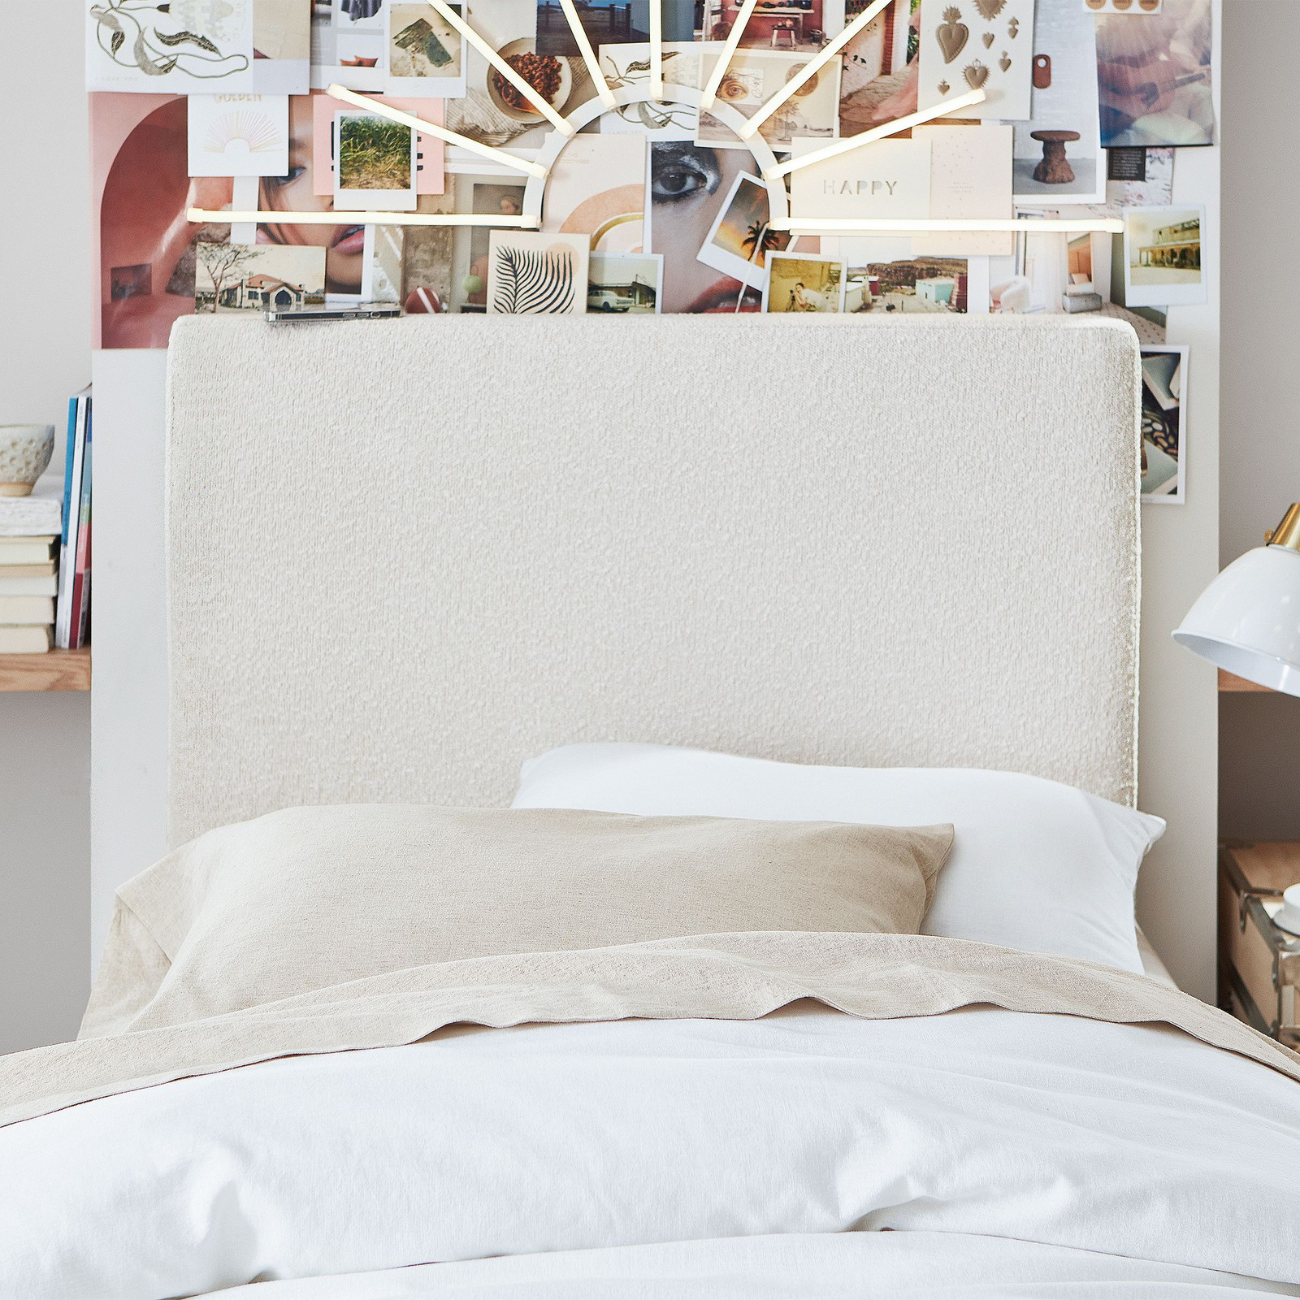 Cozy Dorm Room Ideas